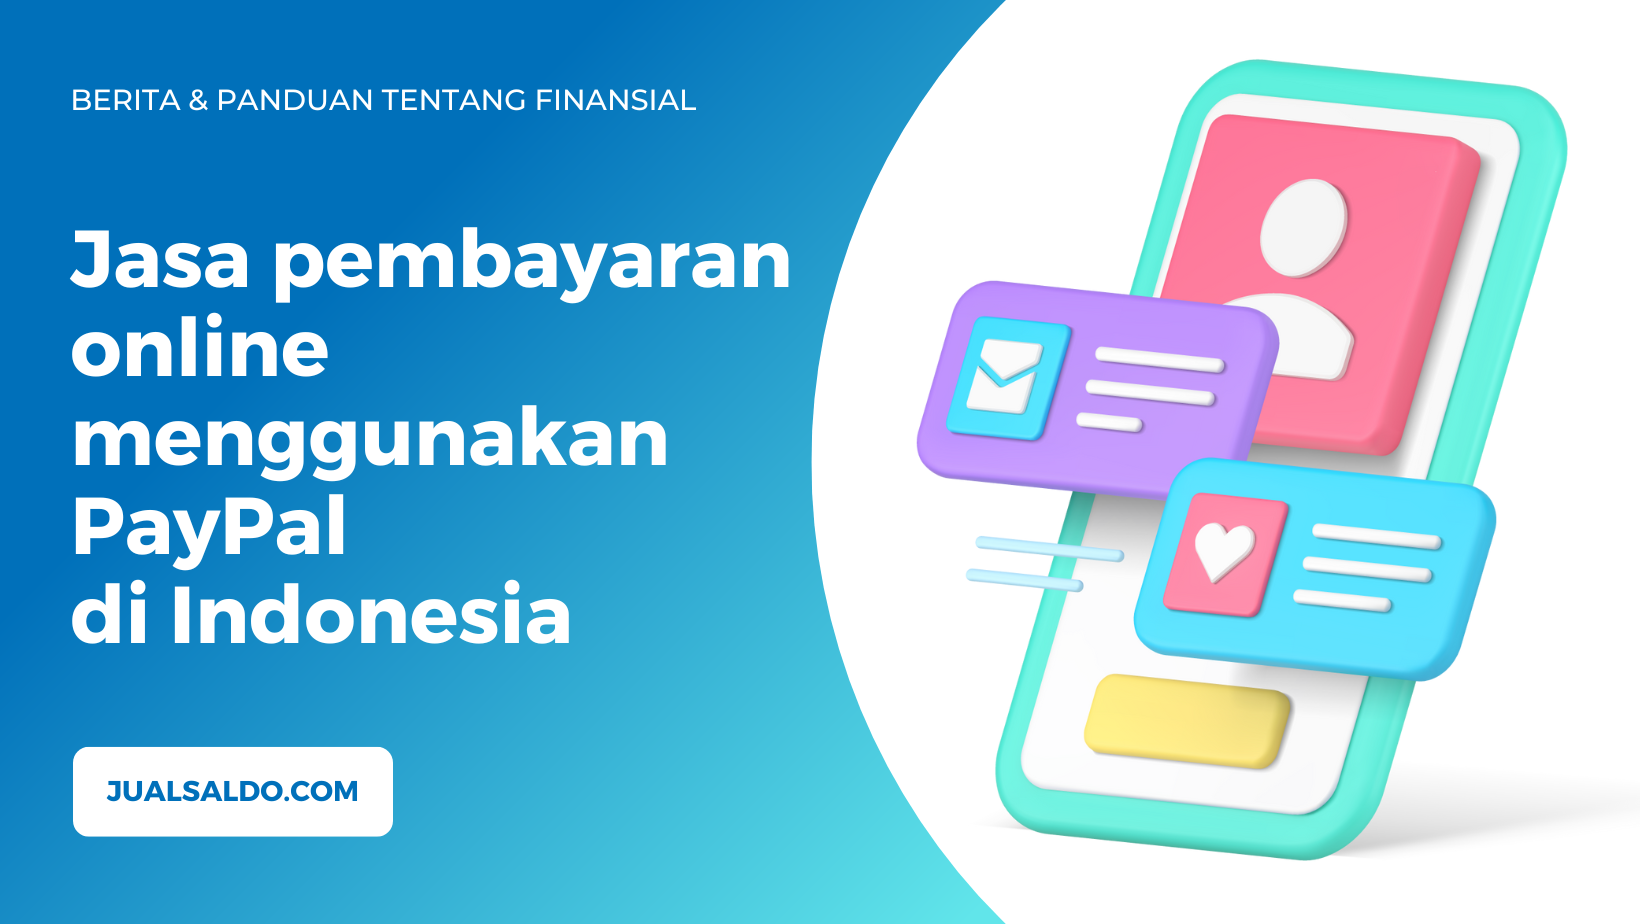 Jasa pembayaran online menggunakan PayPal di Indonesia